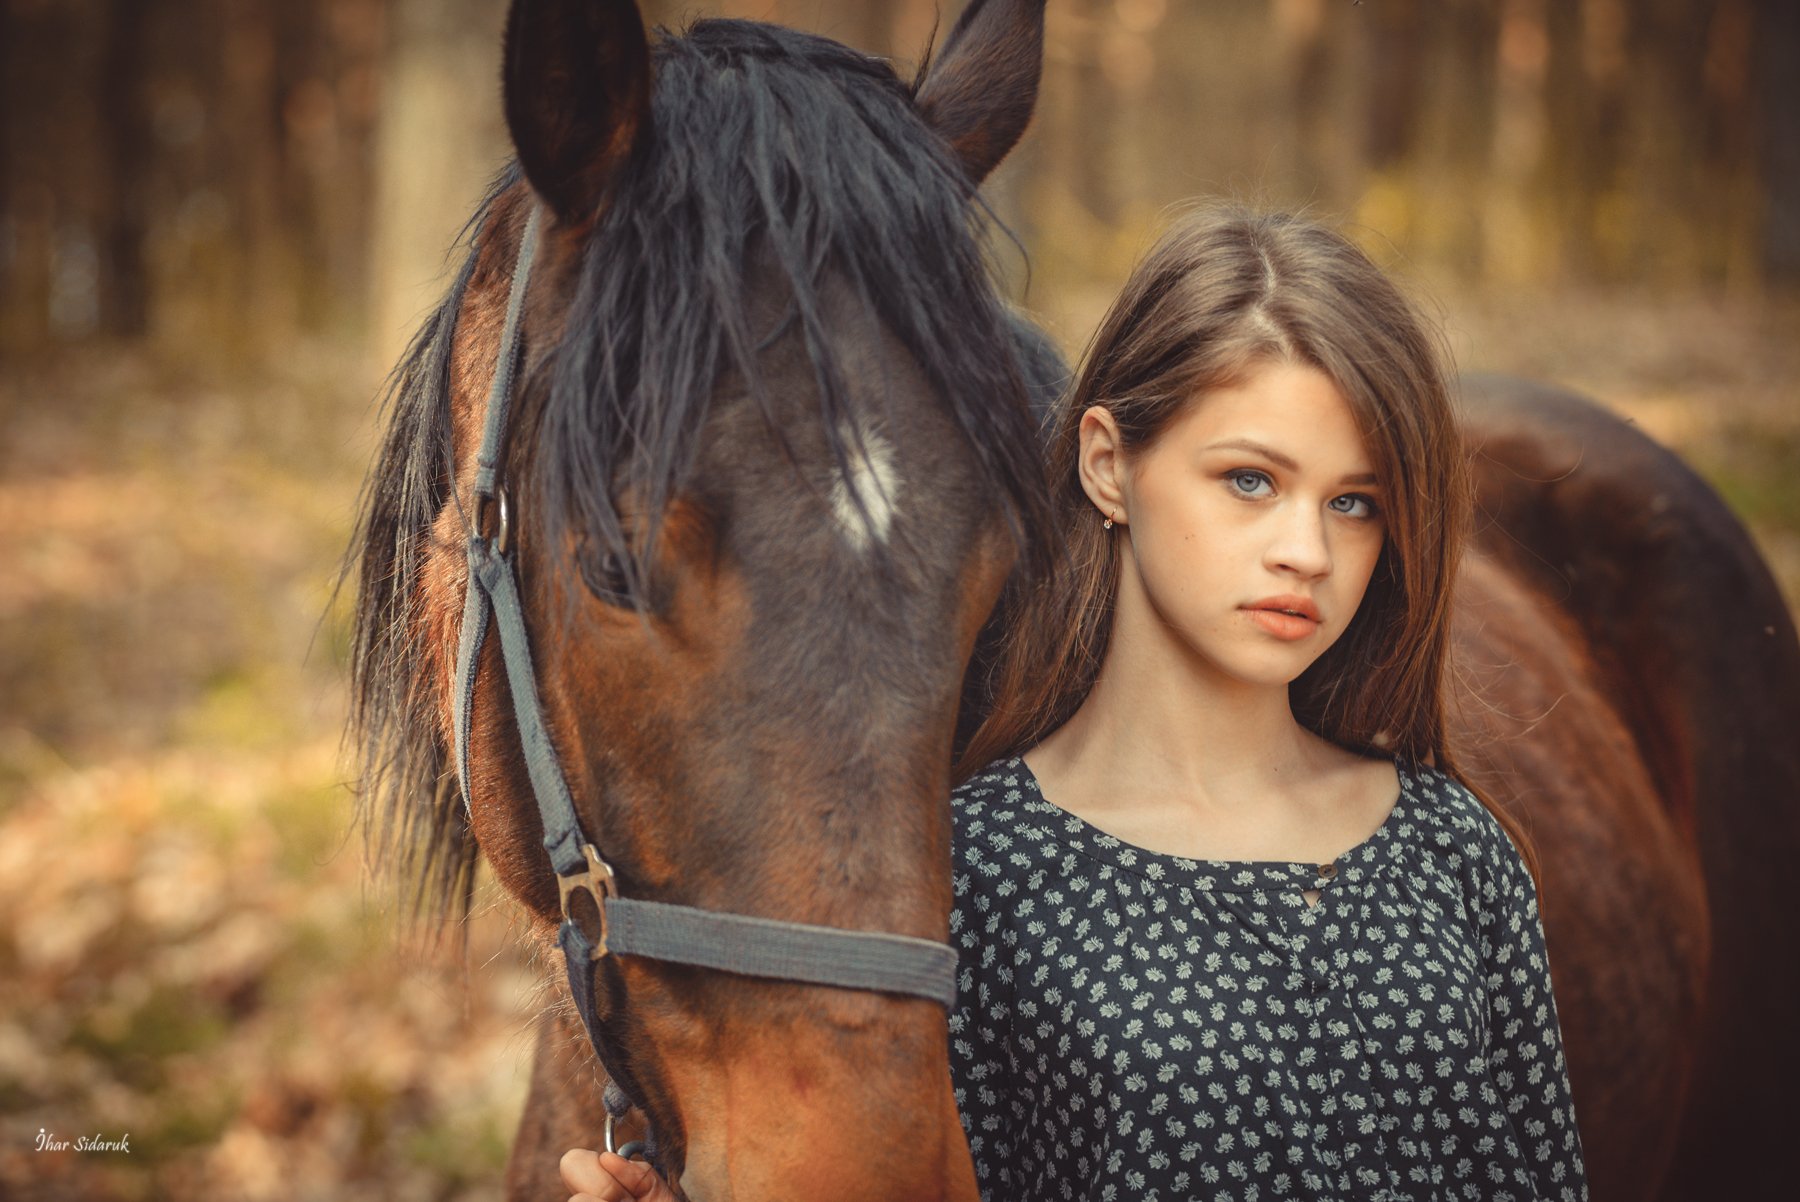 девушка, лошадь, лес, желтый, солнечный, грива, прическа, взгляд, вырез, платье, листья, трава, конь, животное, Игорь Сидорук